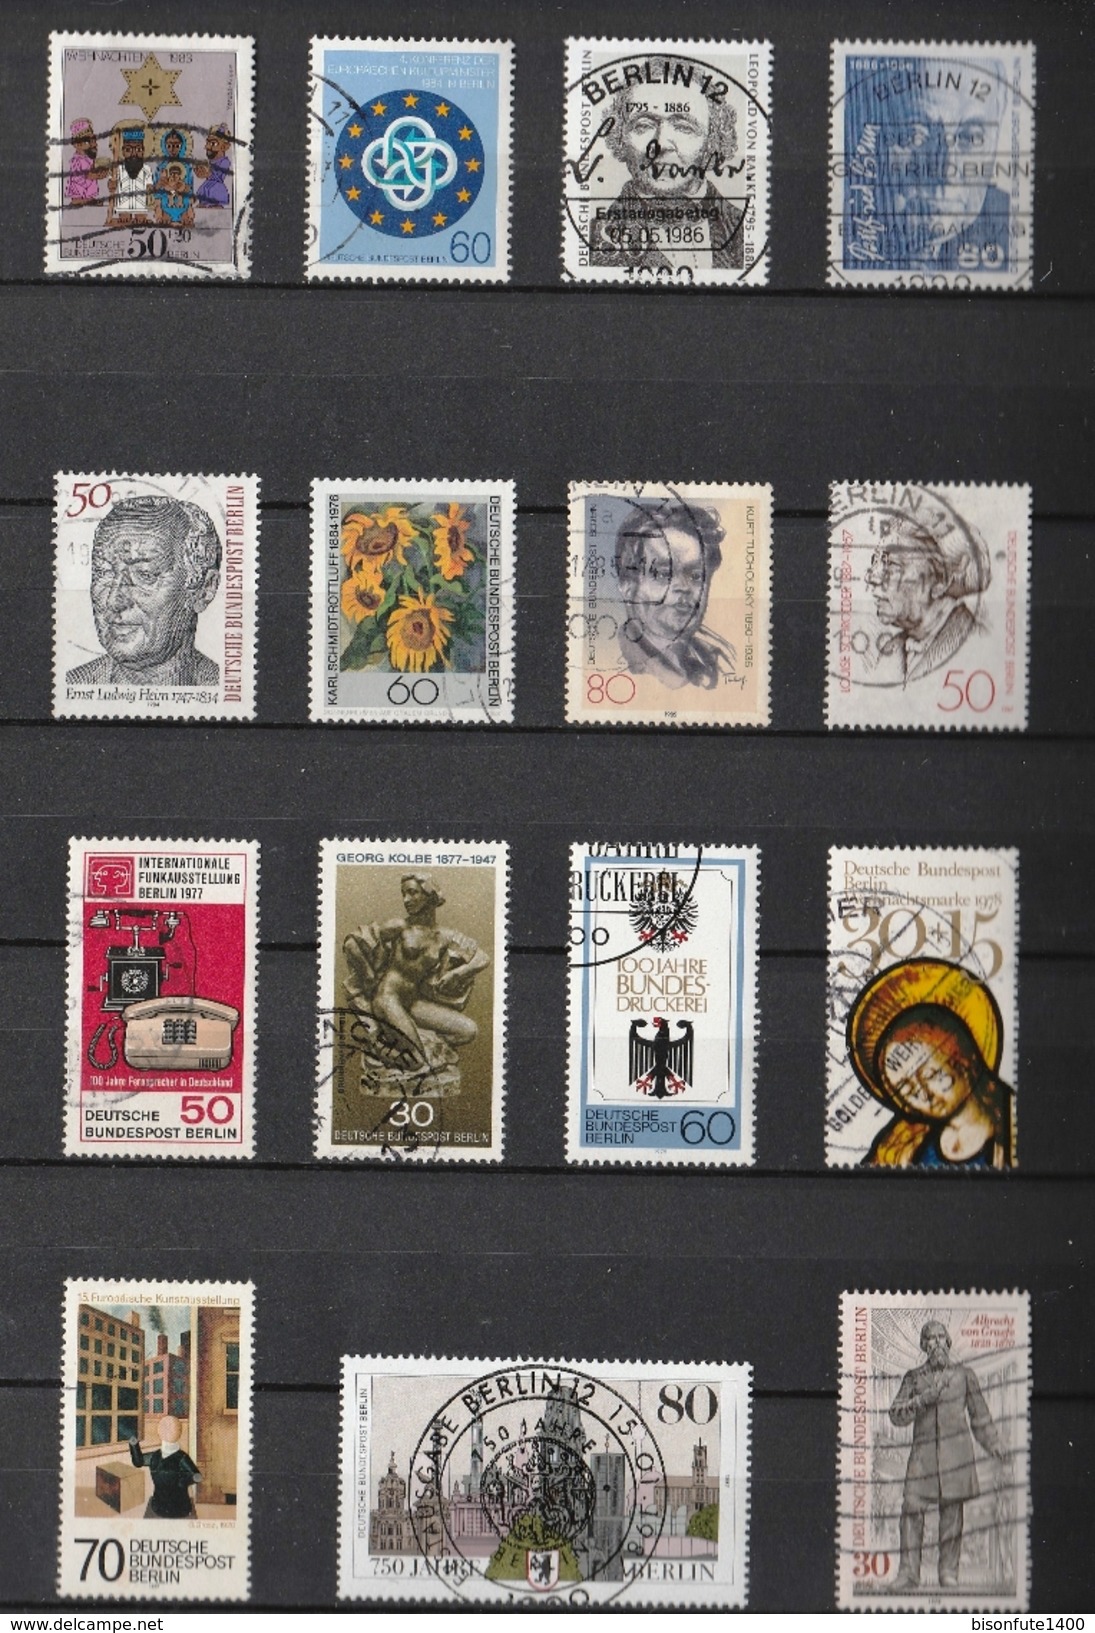 Jolie petite collection de timbres Allemagne Berlin avec jolies oblitérations et séries complètes (voir les 15 photos)